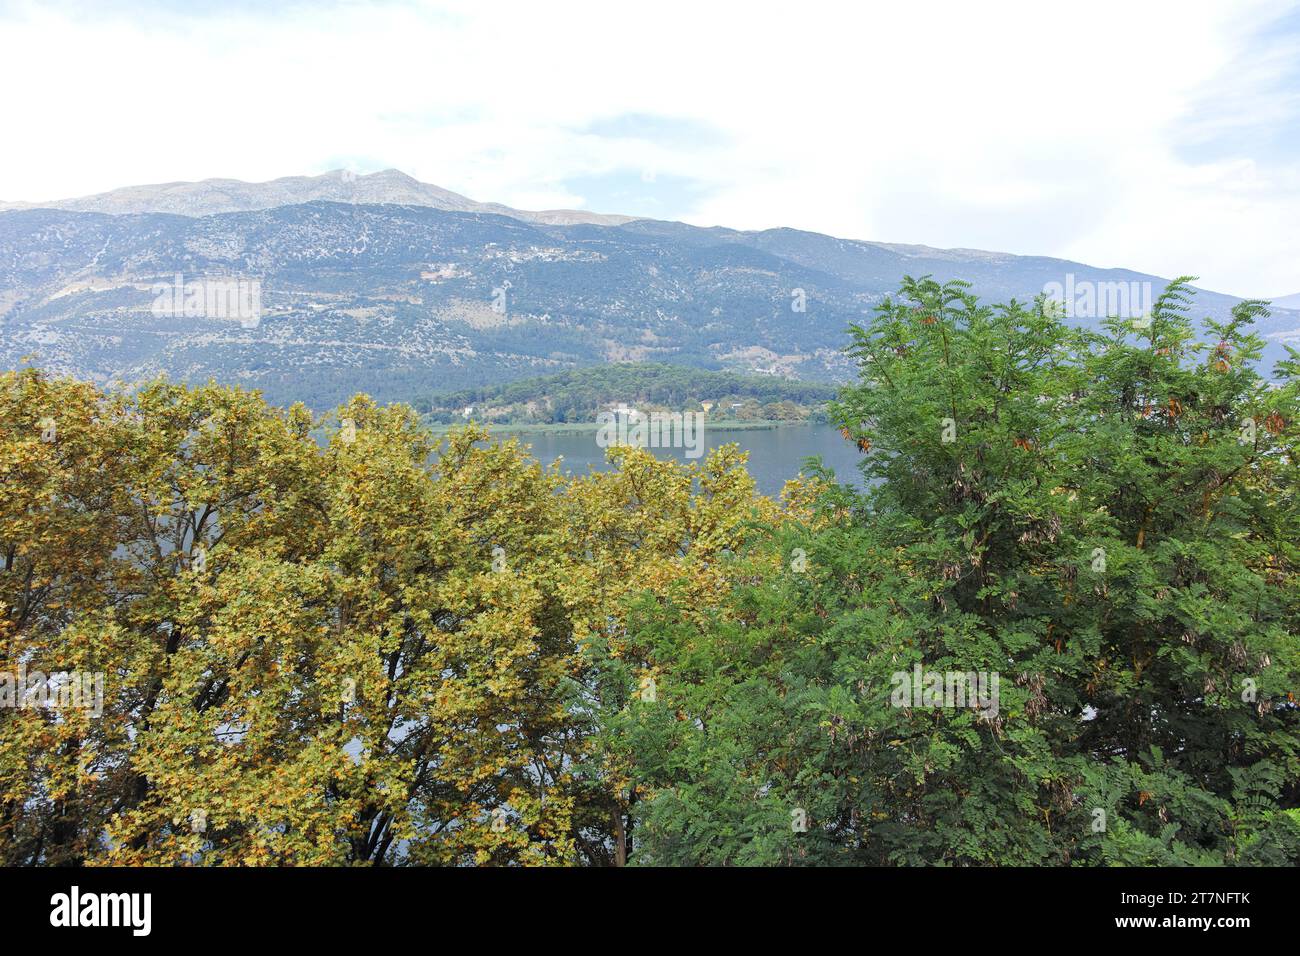 IOANNINA, GREECE - AUGUST 27, 2023: Panorama of Old town of city of Ioannina, Epirus, Greece Stock Photo